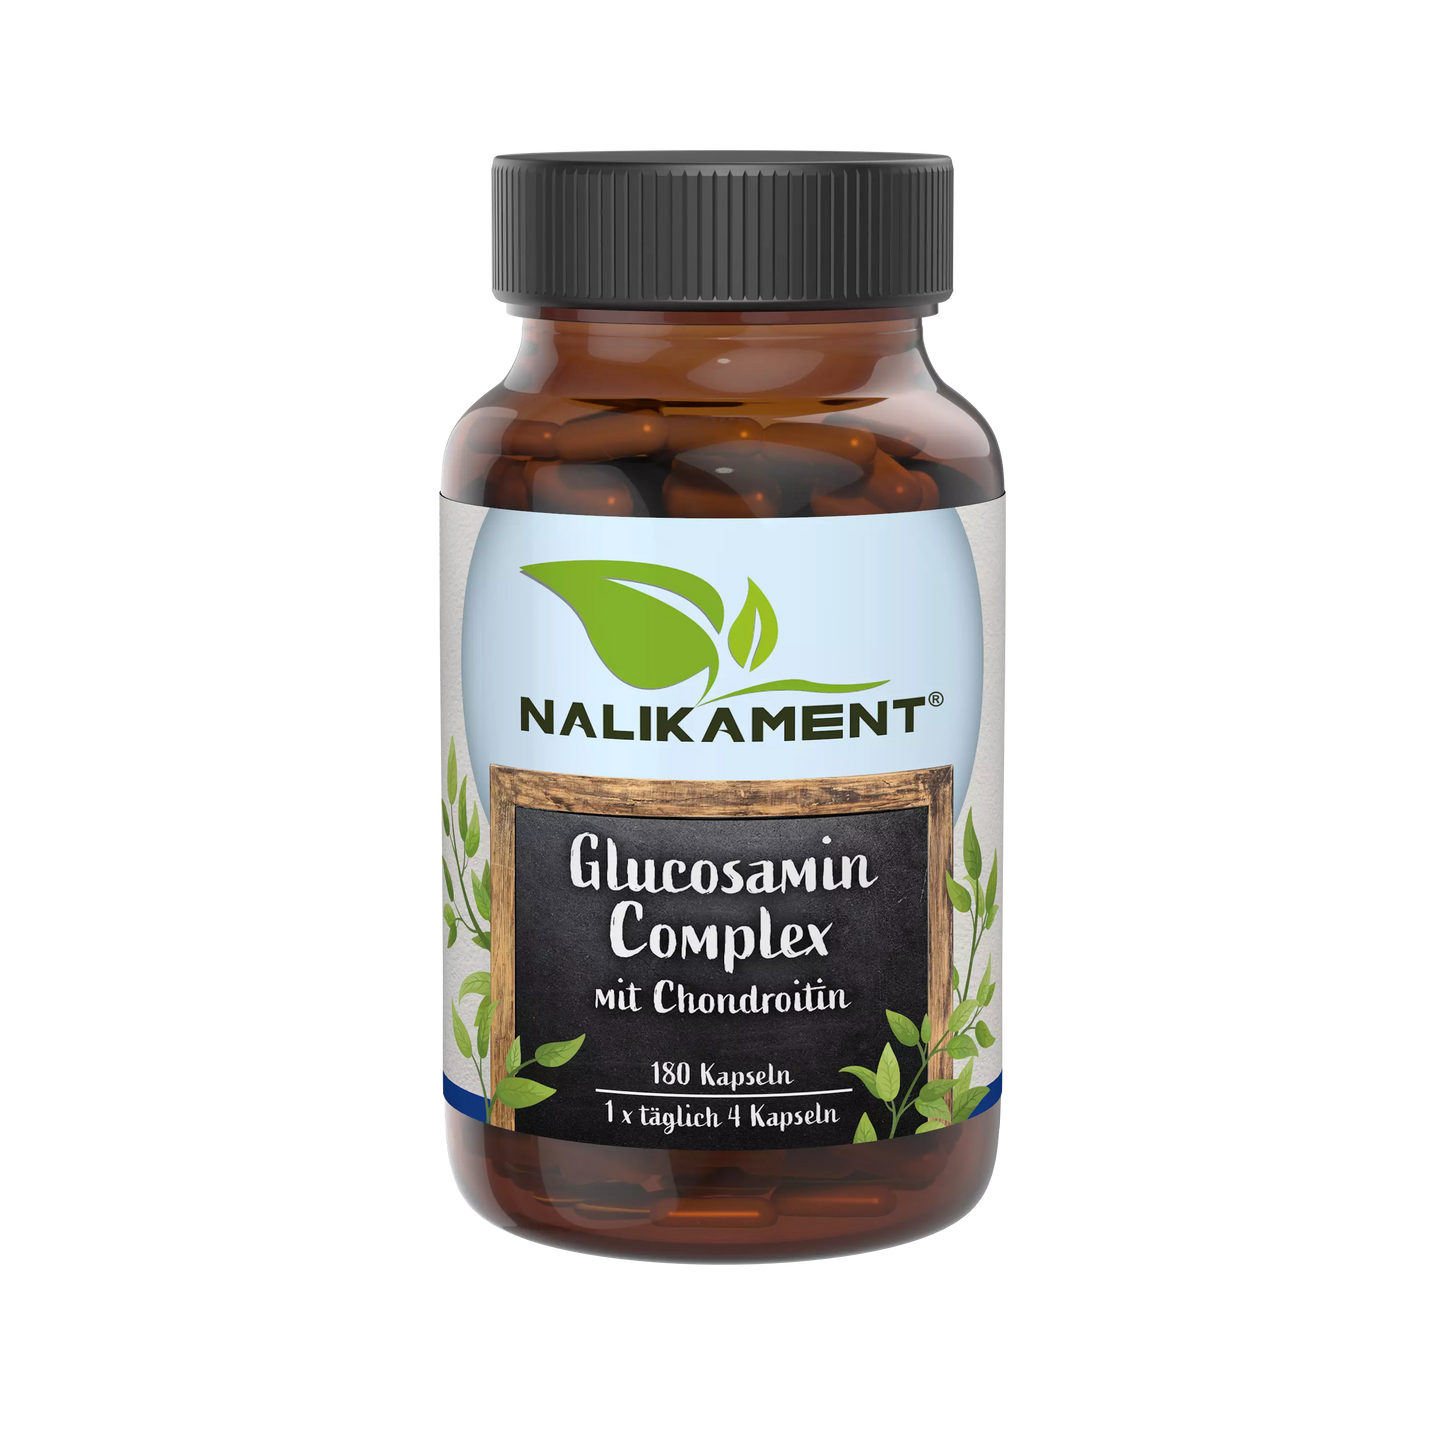 Nahrungsergänzungsmittel-Flasche mit Glucosamin-Komplex zur Unterstützung der Gelenkgesundheit und zur Verringerung von Gelenkschmerzen.